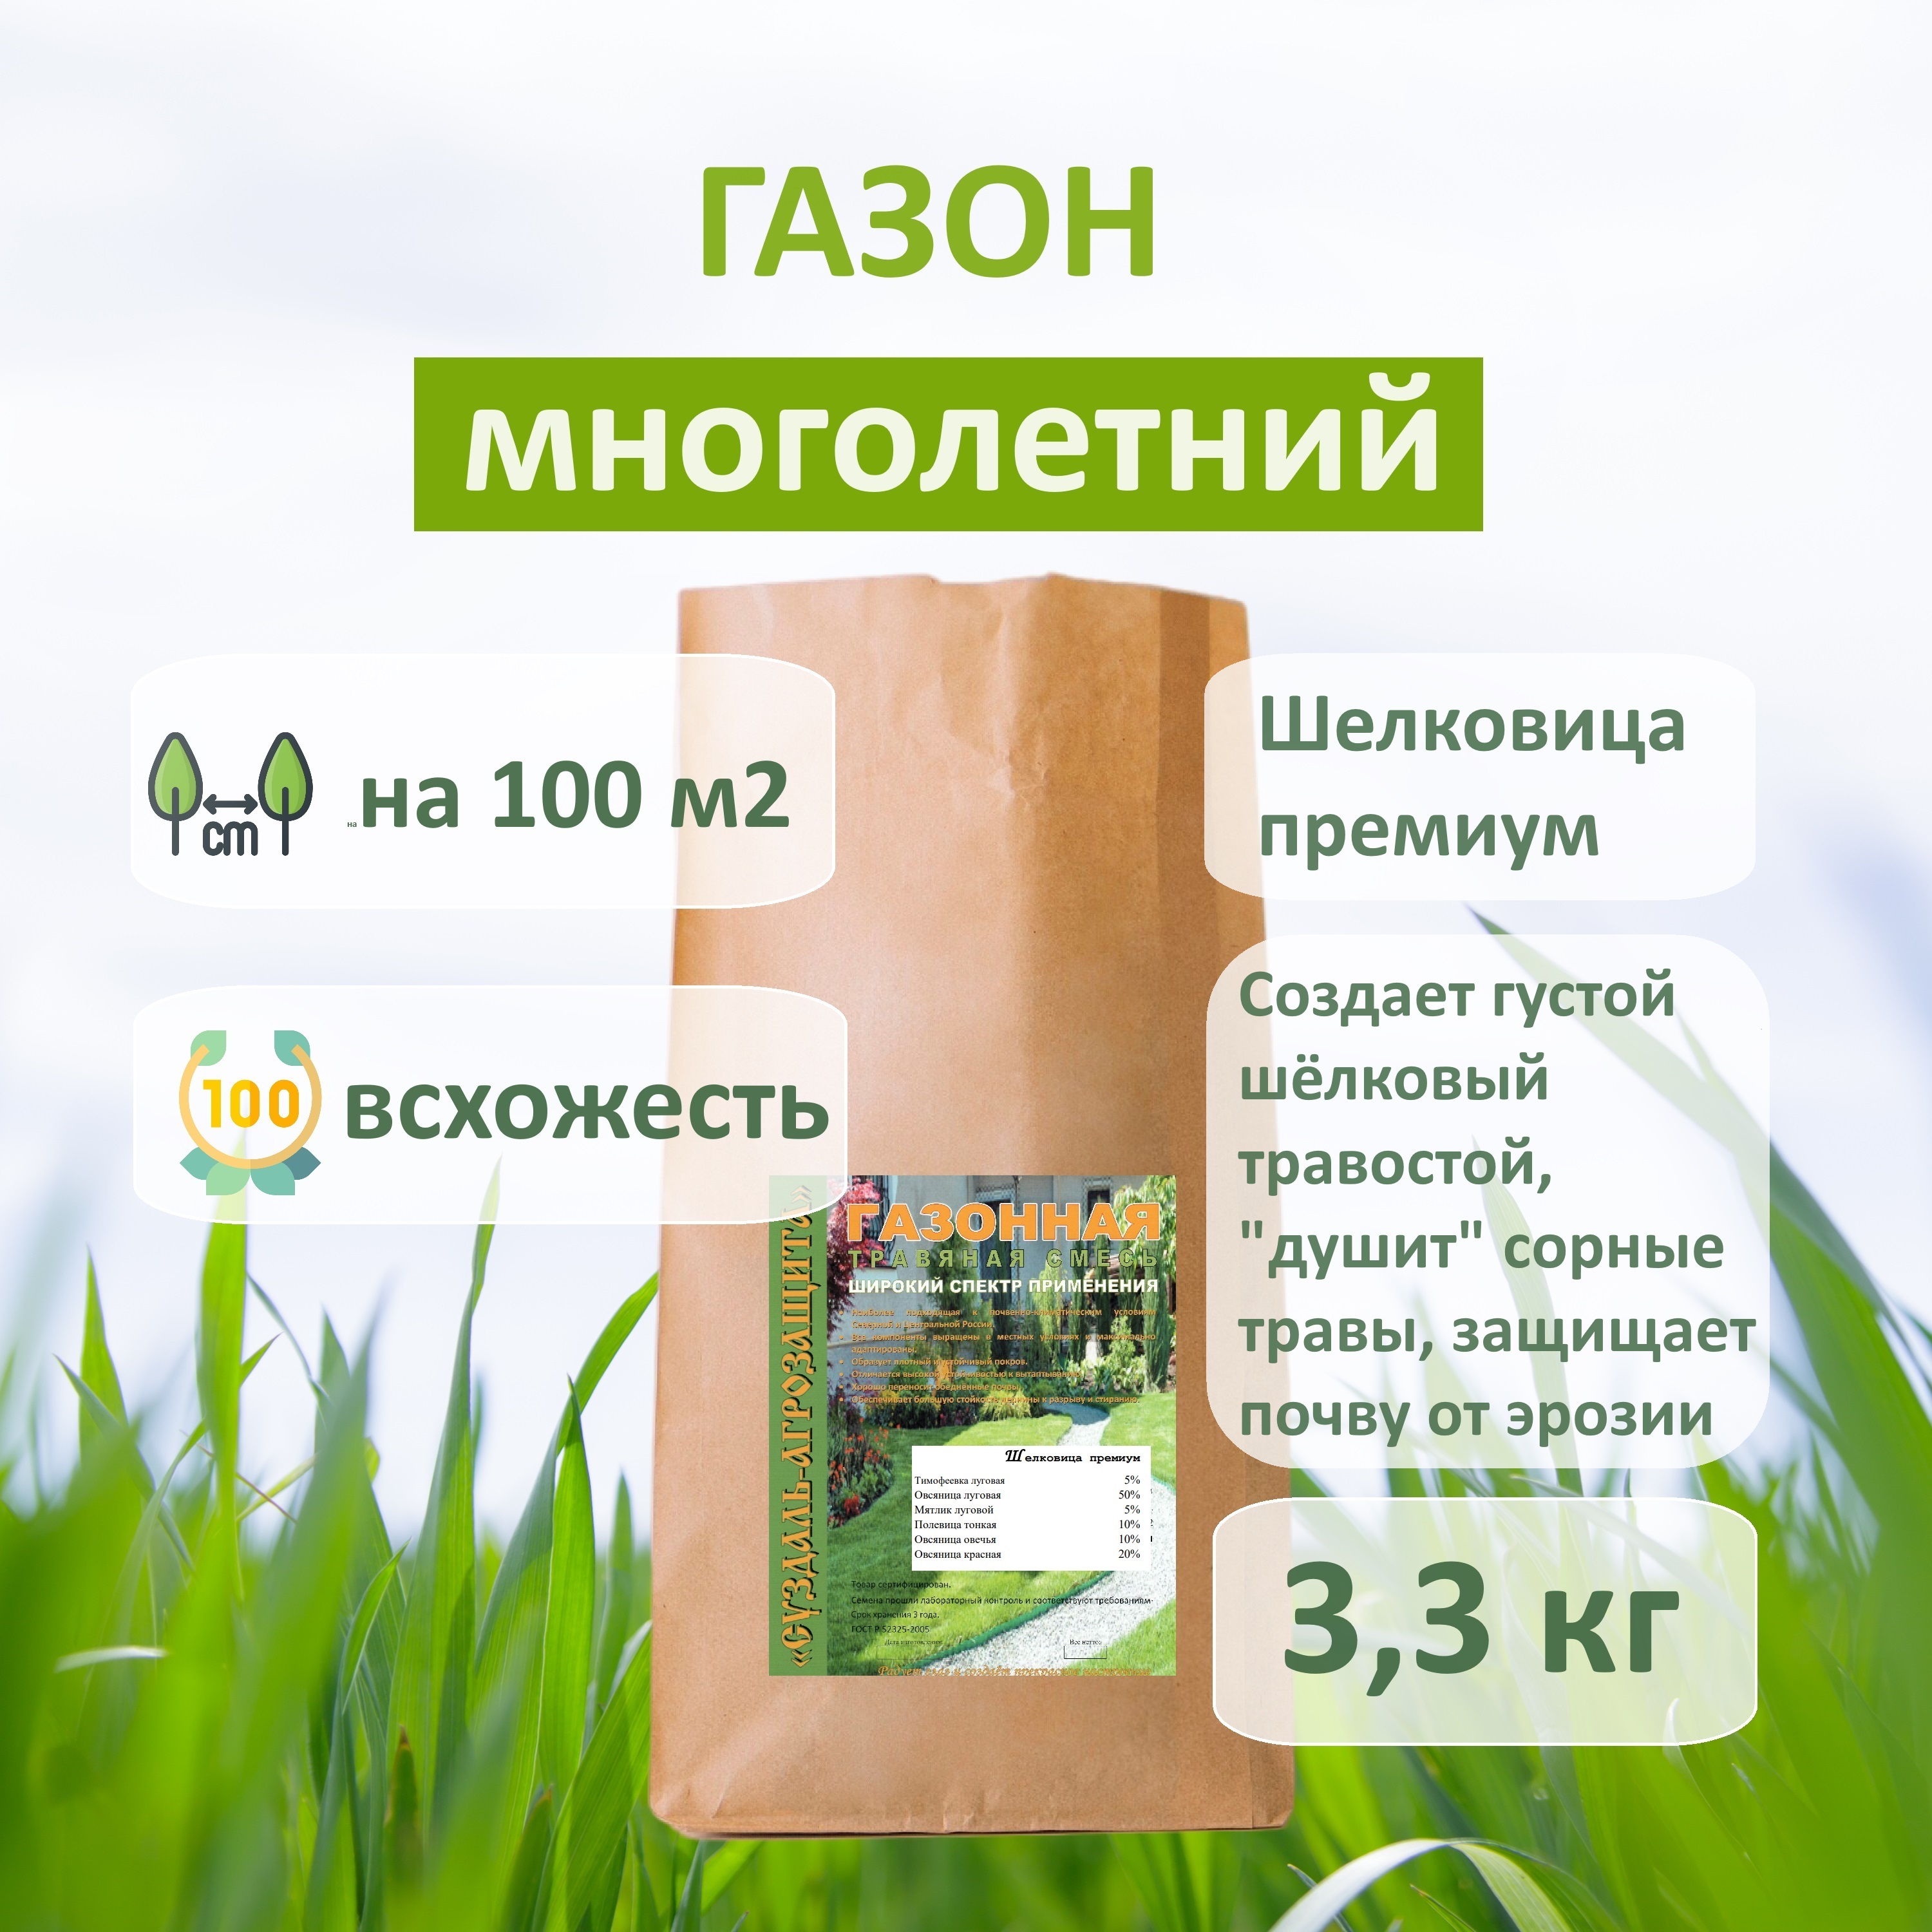 Семена многолетней газонной травы Шелковица премиум ЗАО Суздаль-Агрозащита 3 кг